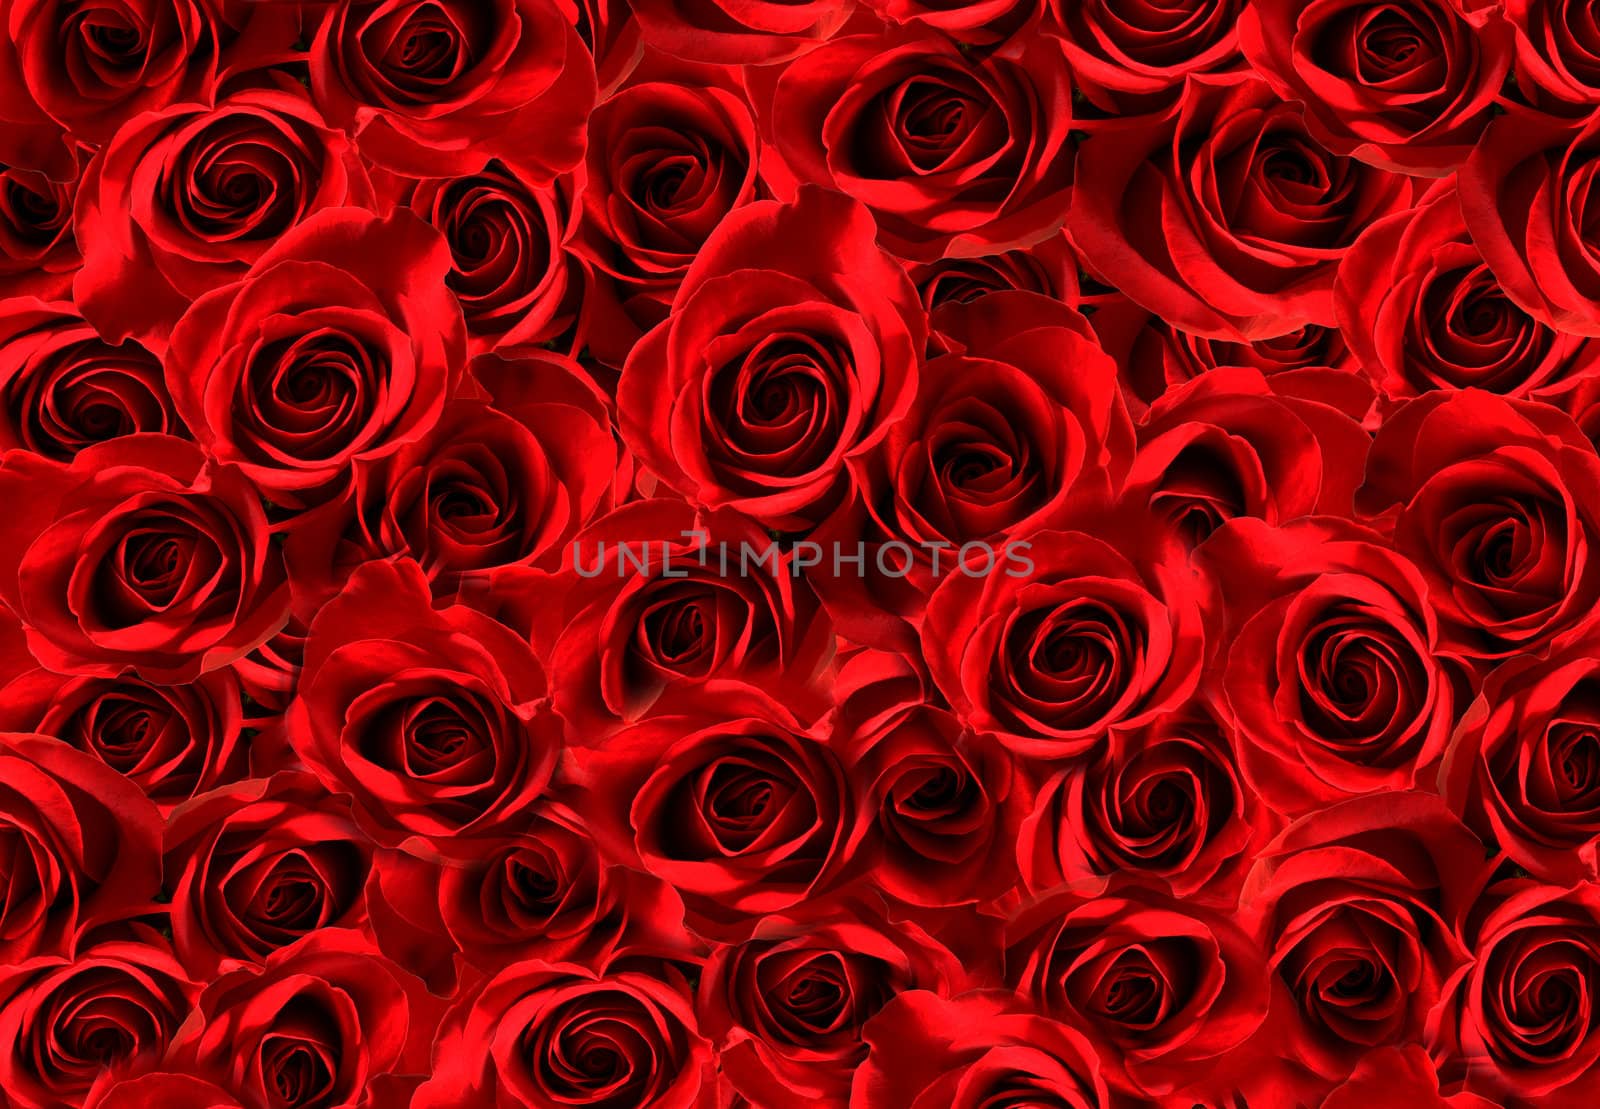 Red roses by mereutaandrei